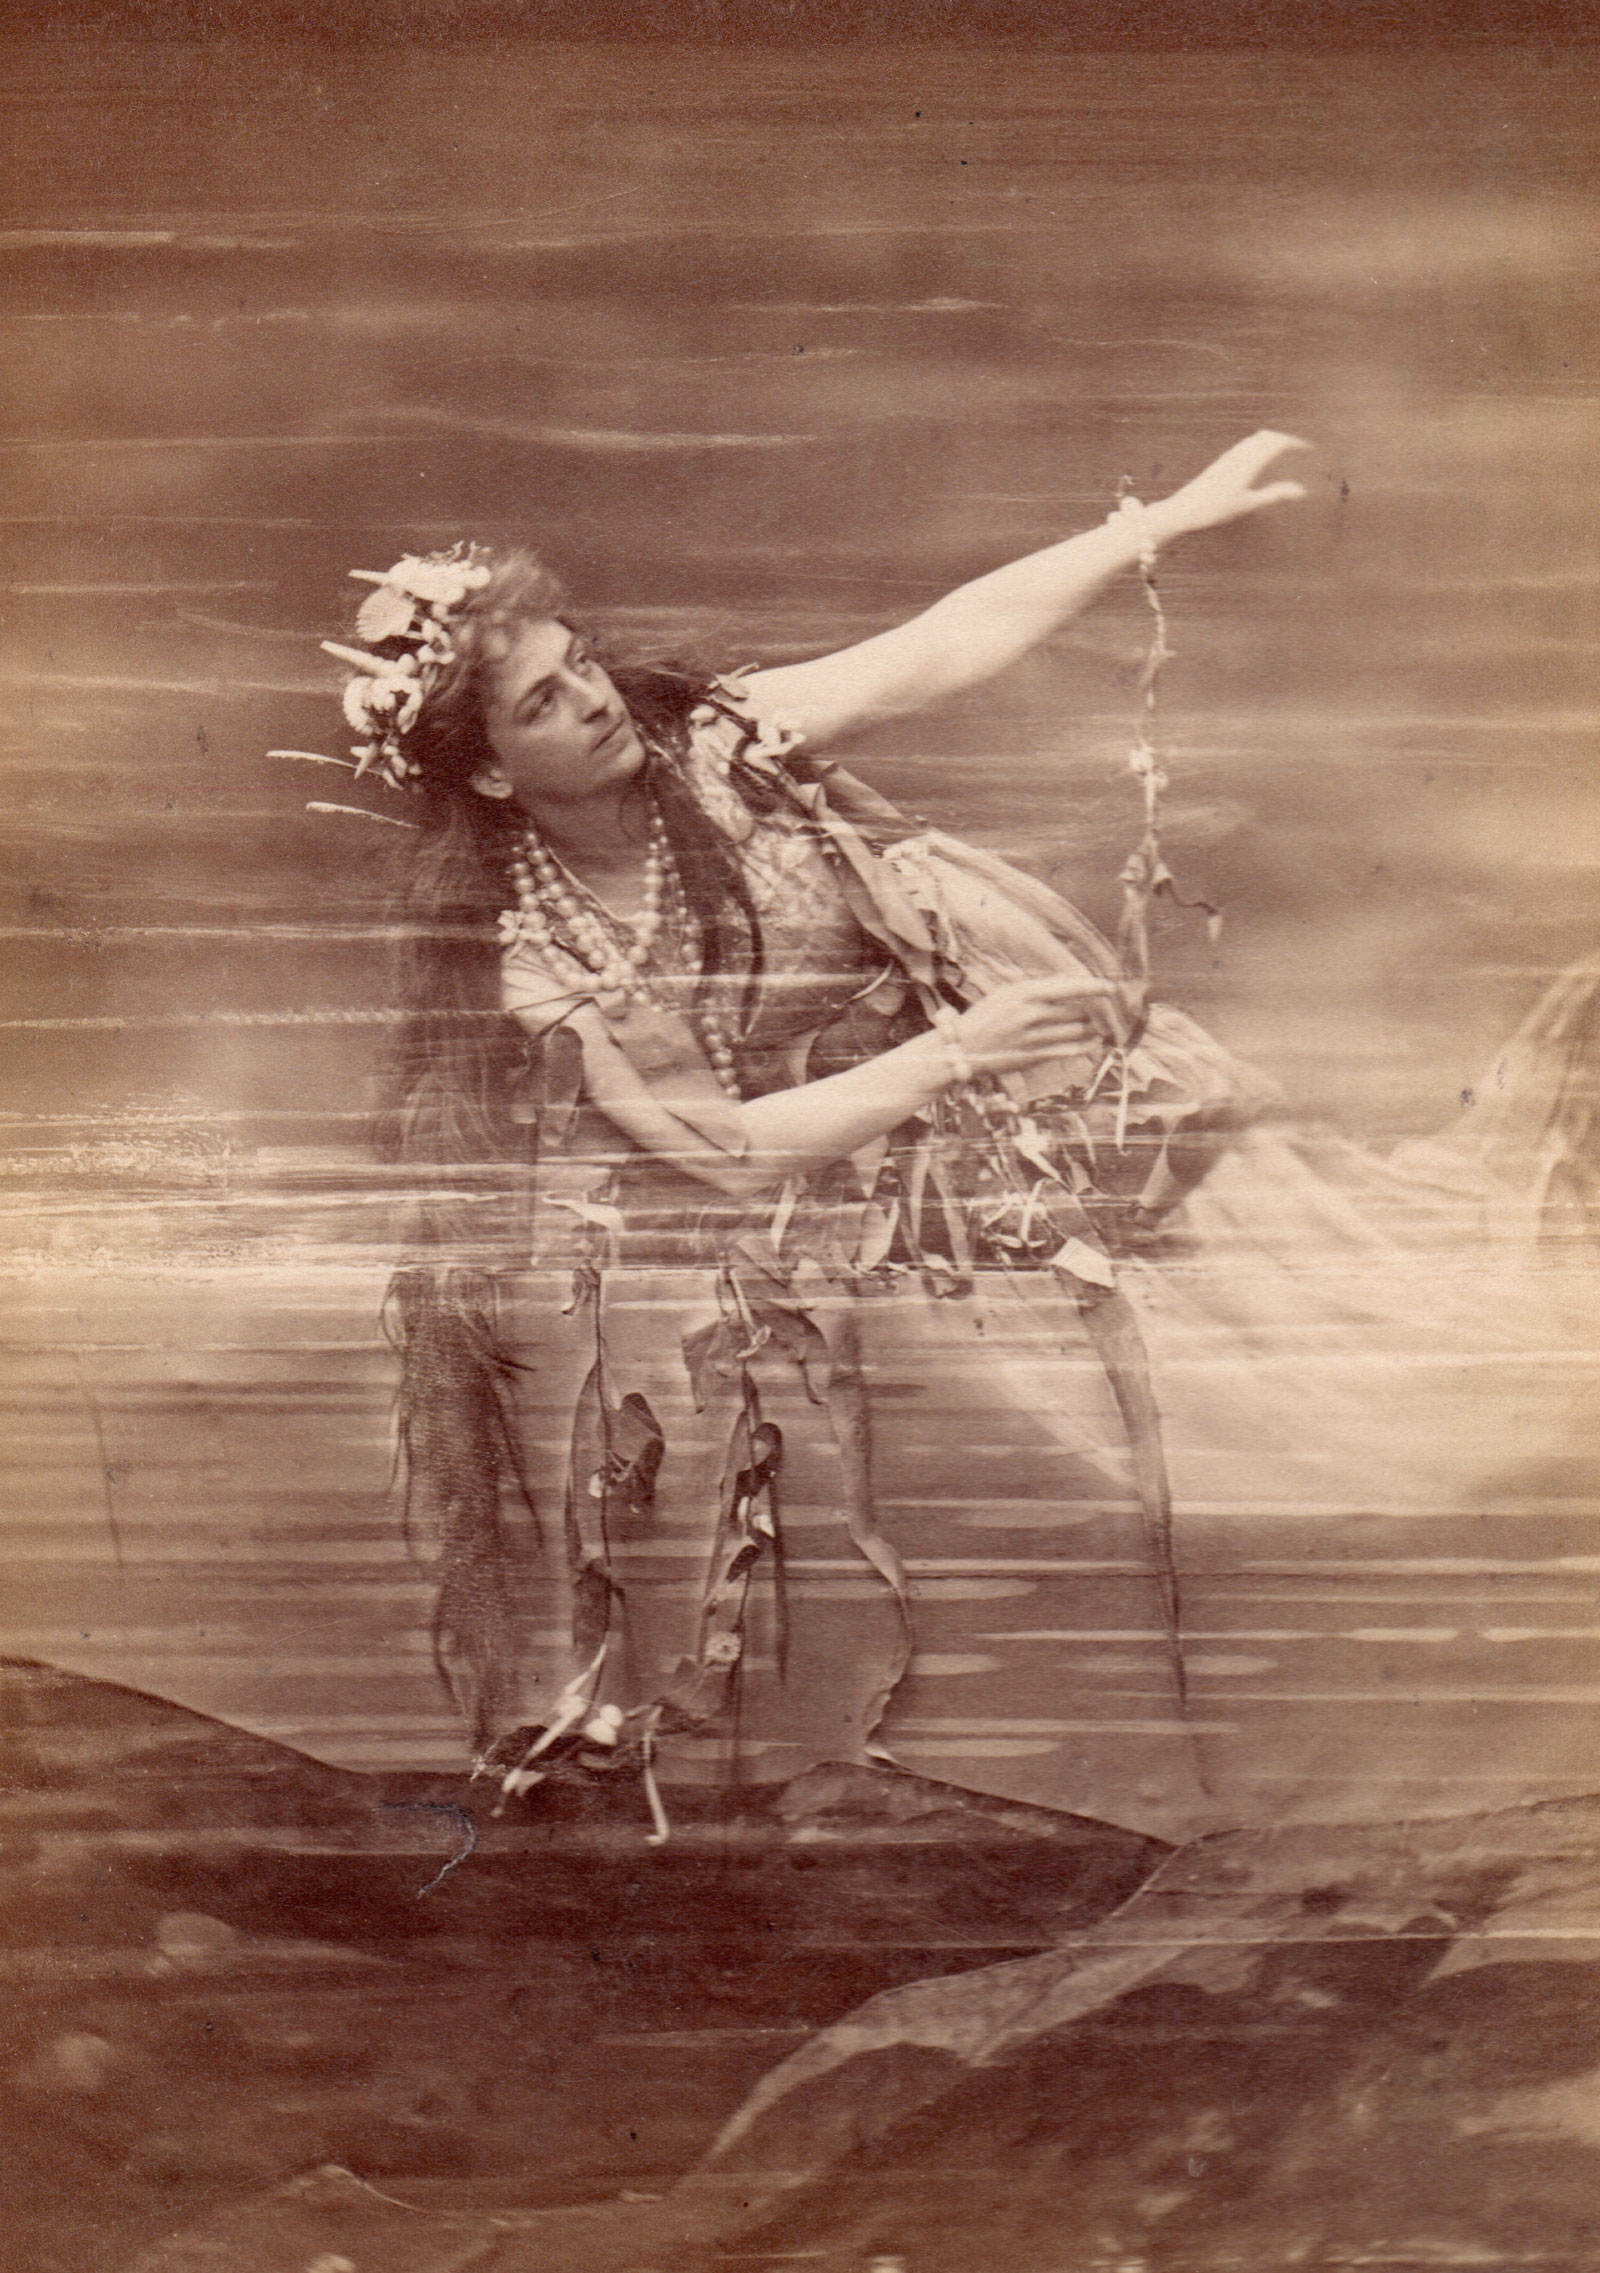 Lilli Lehmann as Woglinde in Das Rheingold, Bayreuth production, 1876